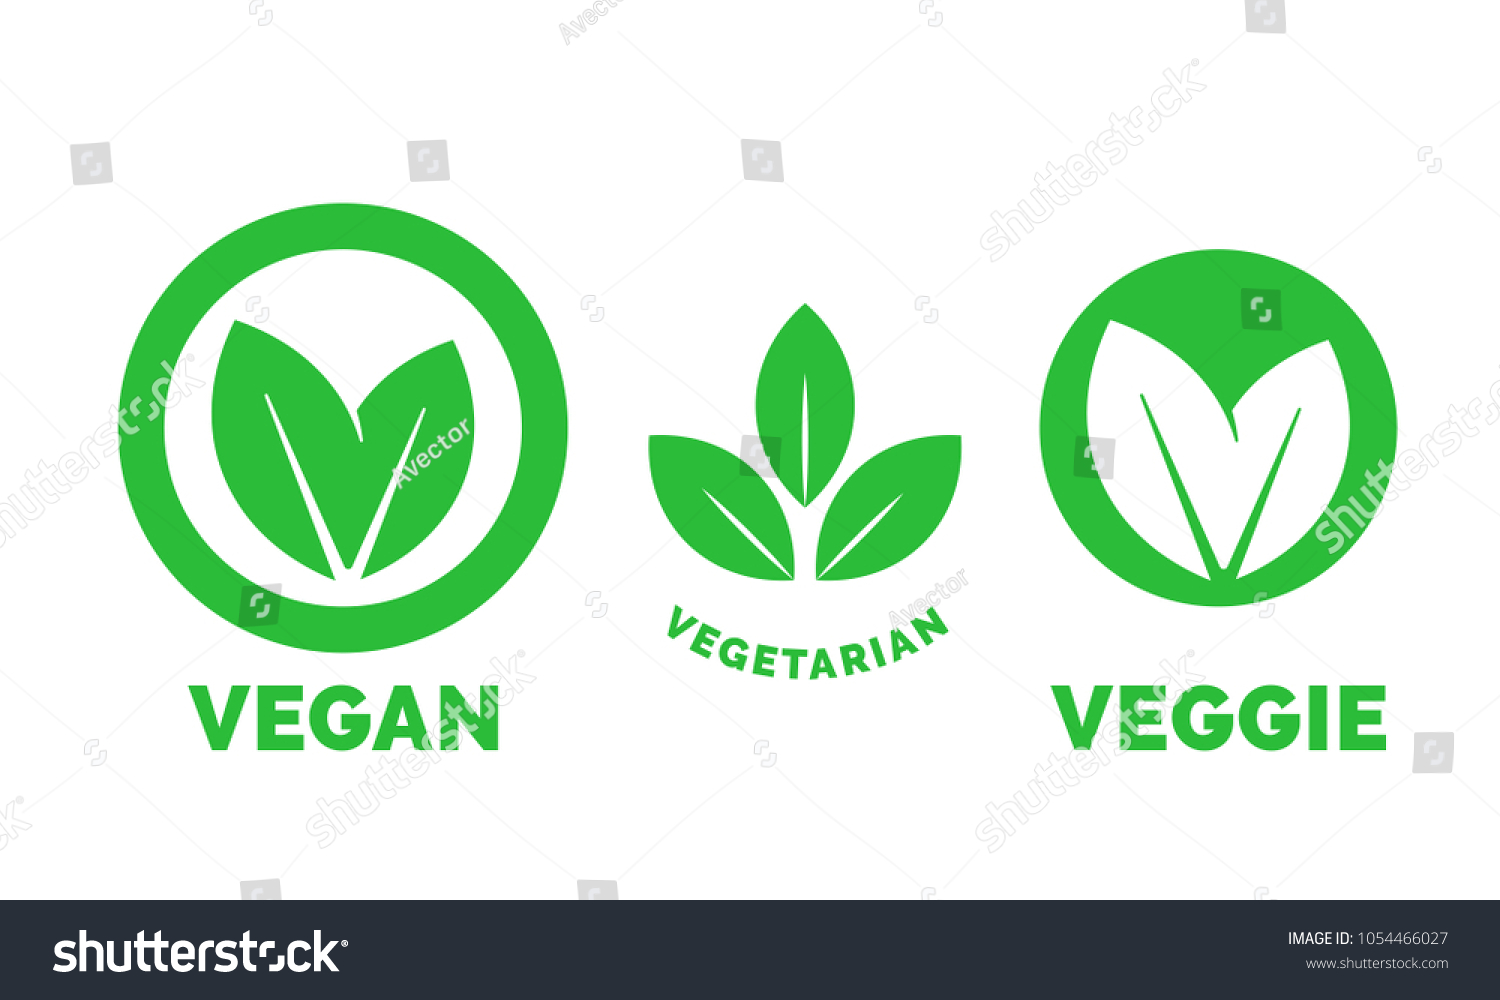 Vegan logo green leaf label template for veggie or vegetarian food package design. Isolated green leaf icon for vegetarian bio nutrition and healthy diet or vegan restaurant menu symbols set #1054466027